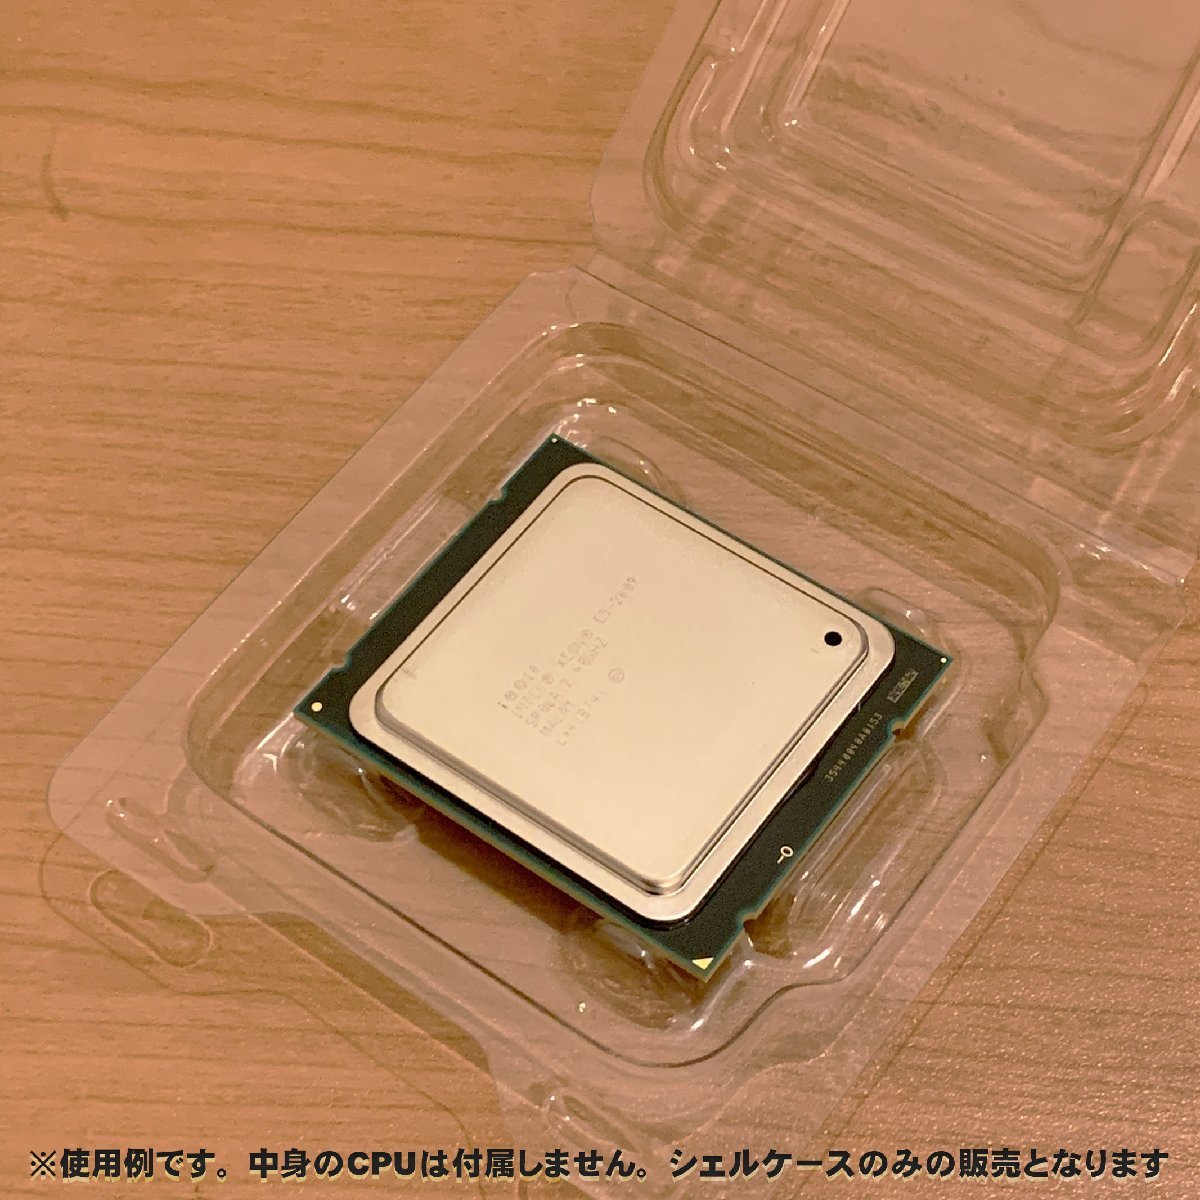 【 LGA2011 】CPU XEON シェルケース LGA 用 プラスチック 保管 収納ケース 20枚セット_画像4